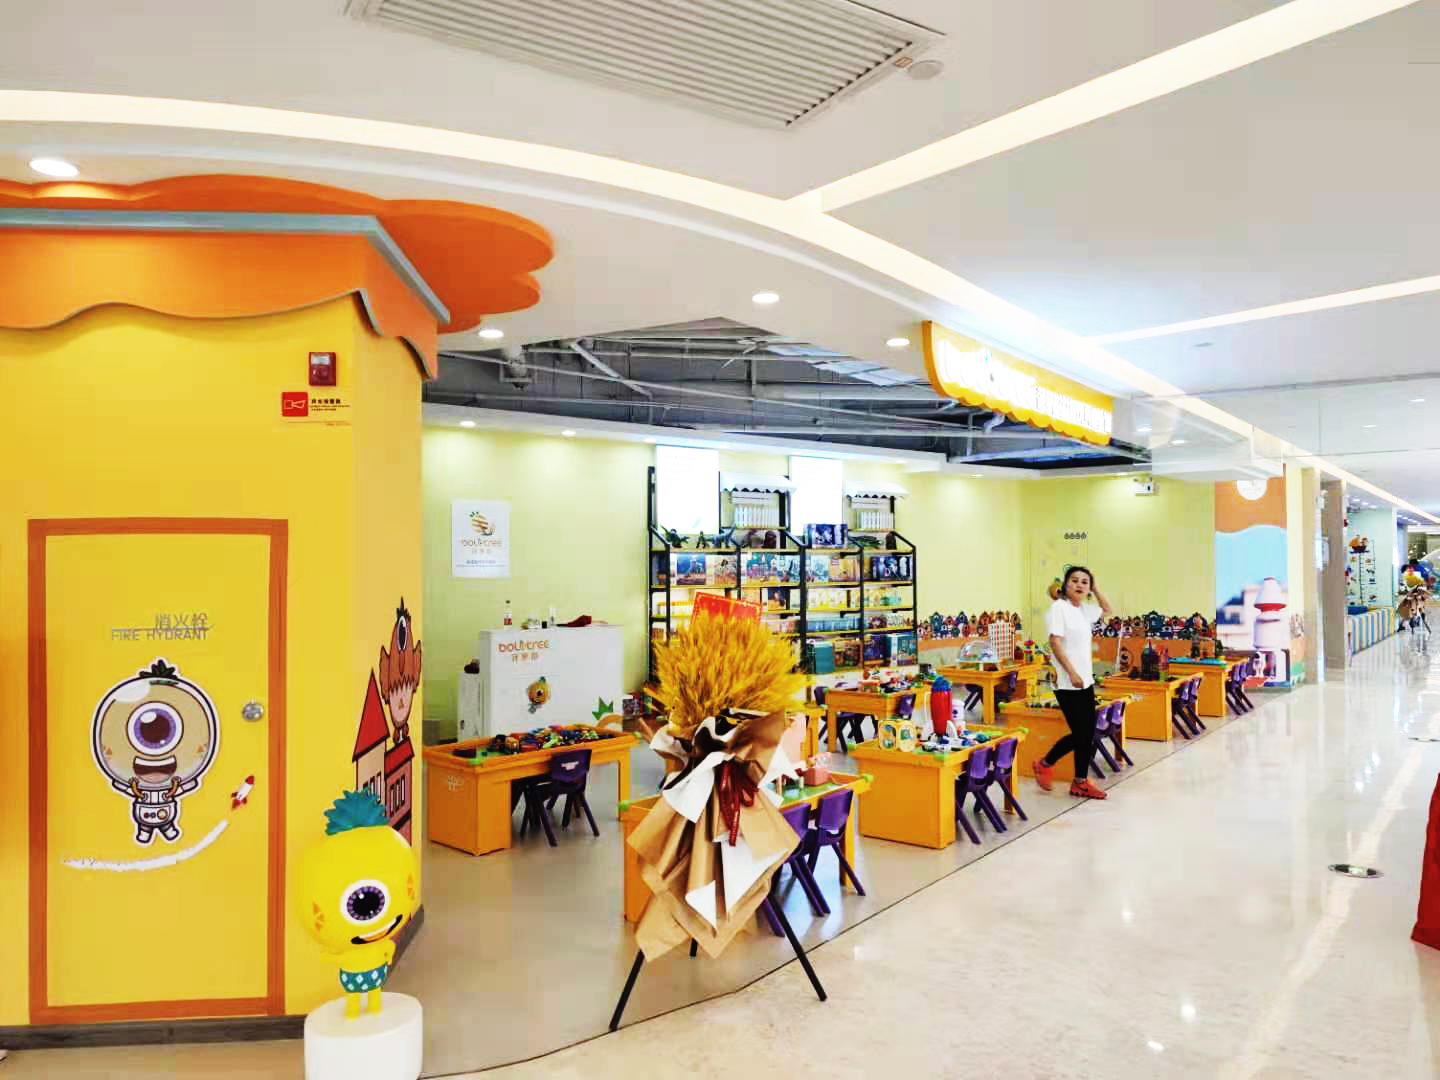 菠萝树分享成功开儿童益智玩具加盟店经验